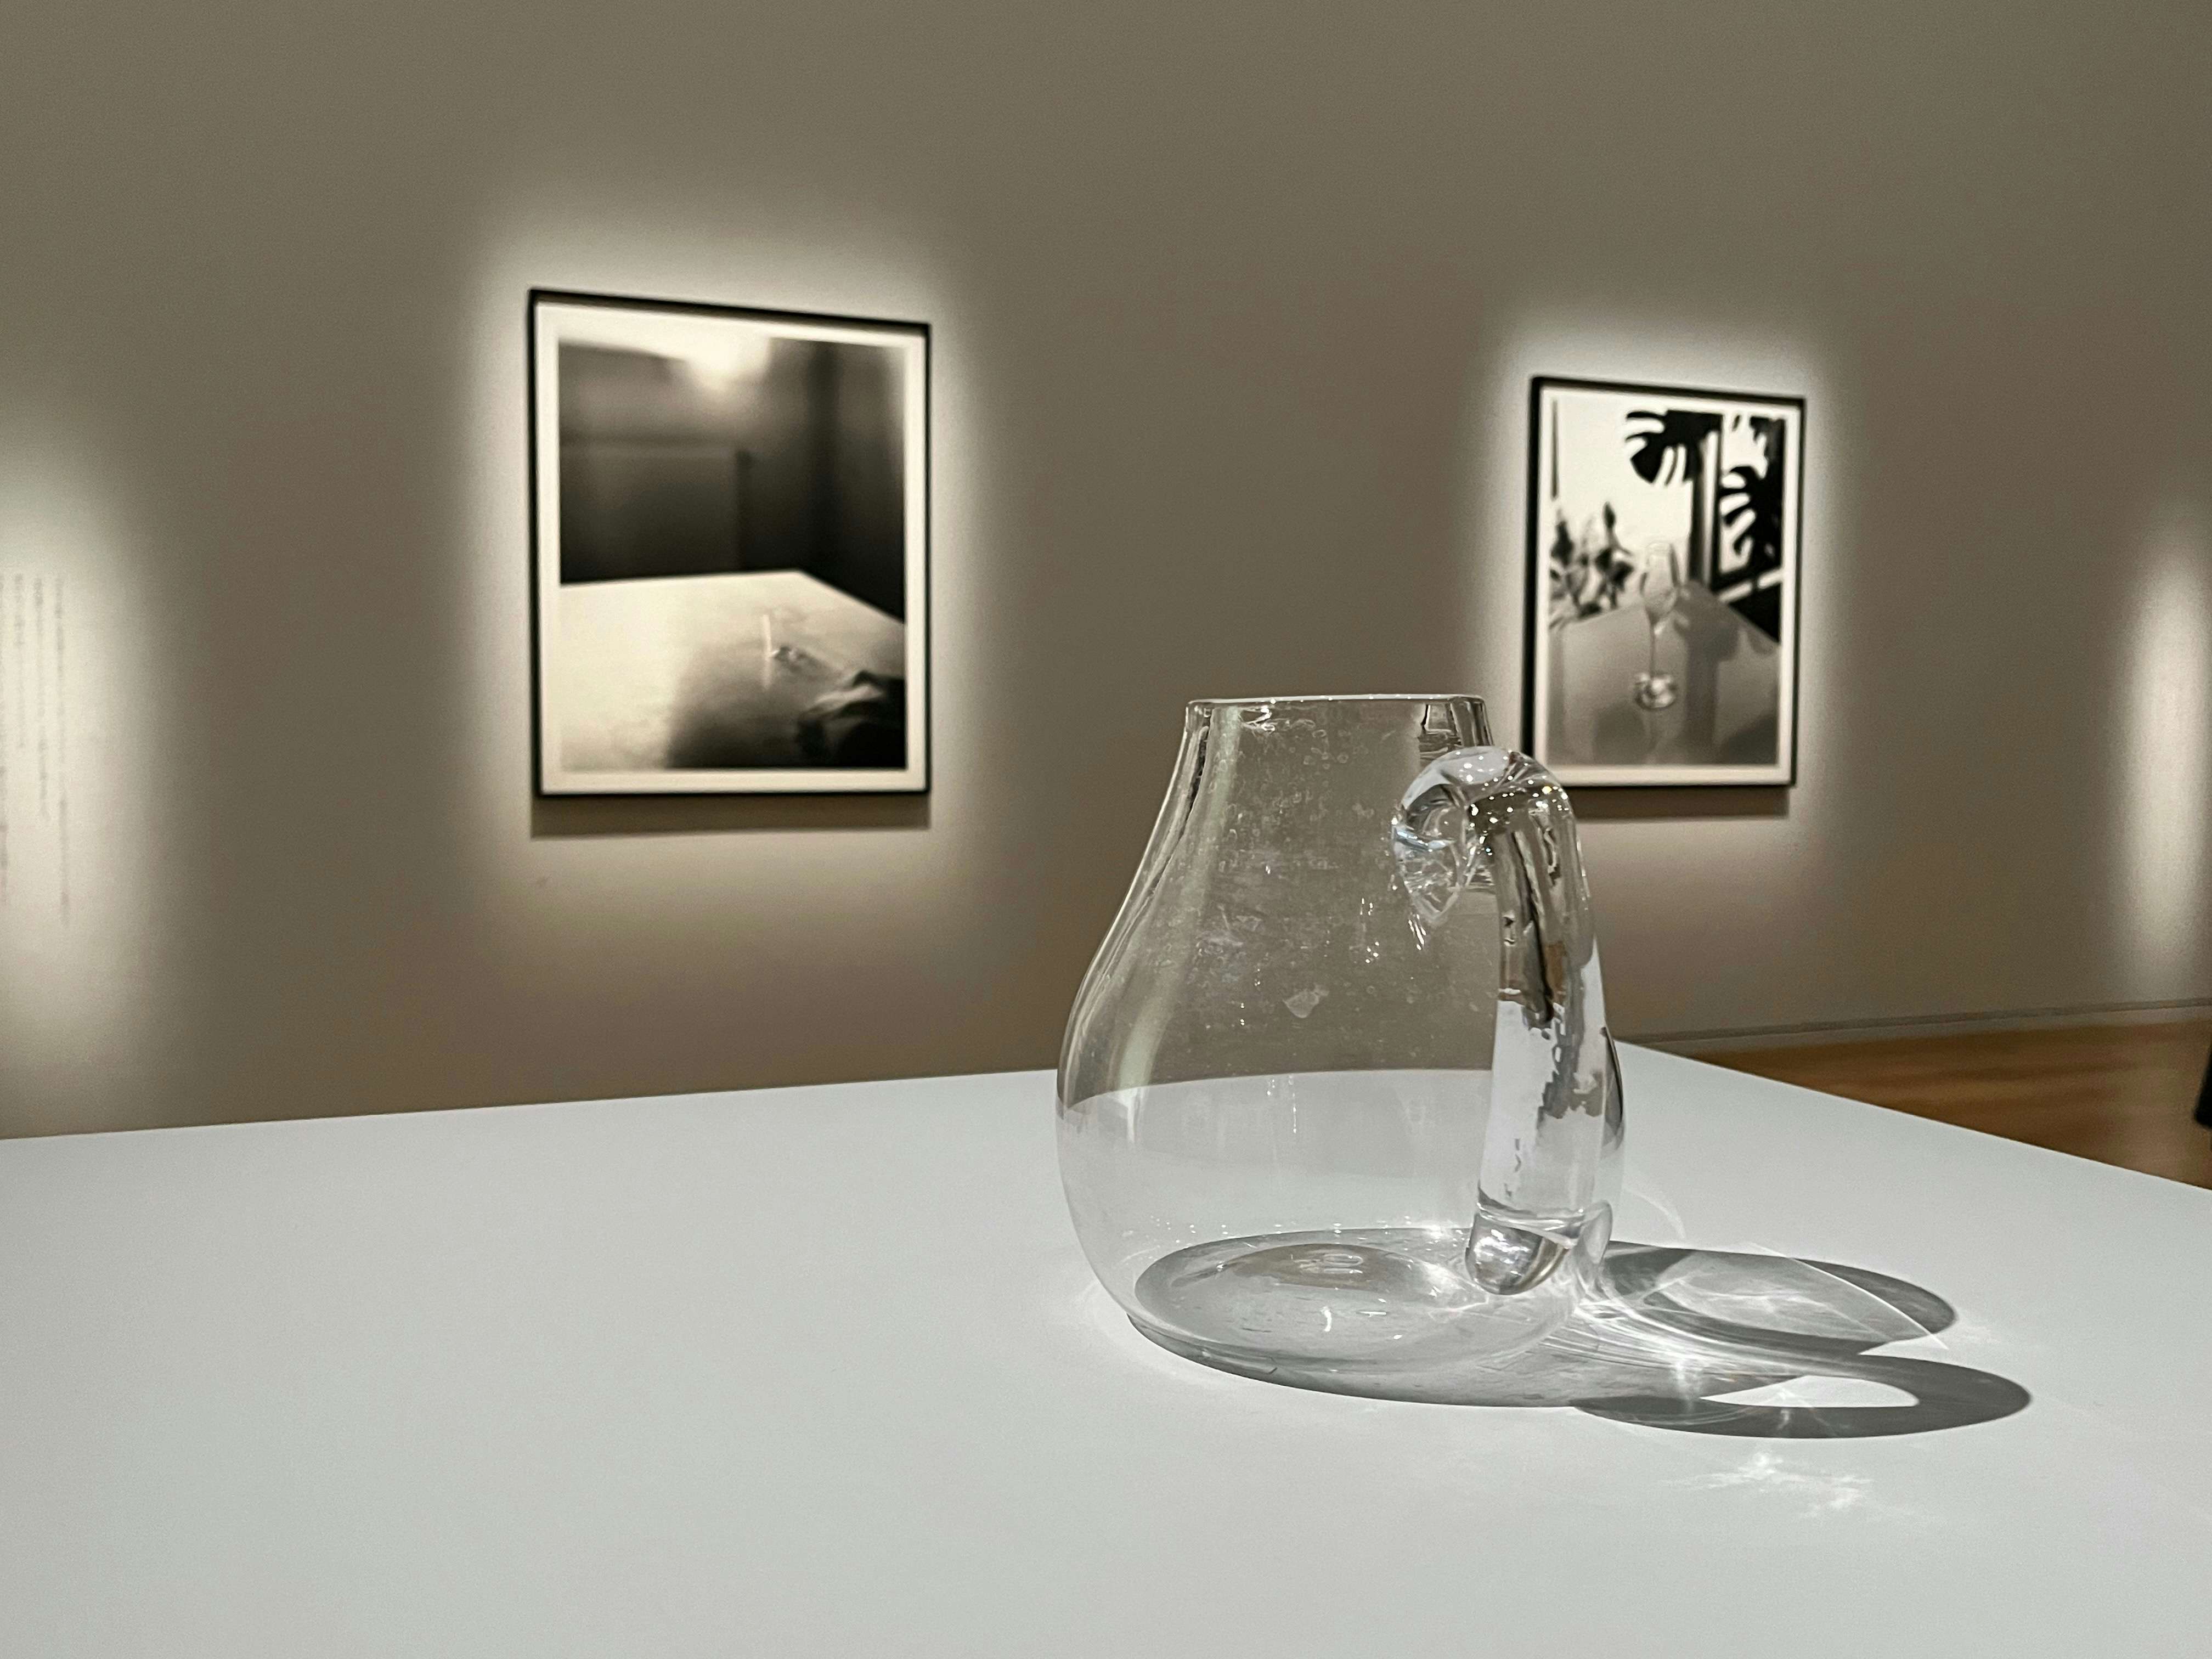 絵画と写真でガラスを再考する。東京オペラシティで見る「ガラス 